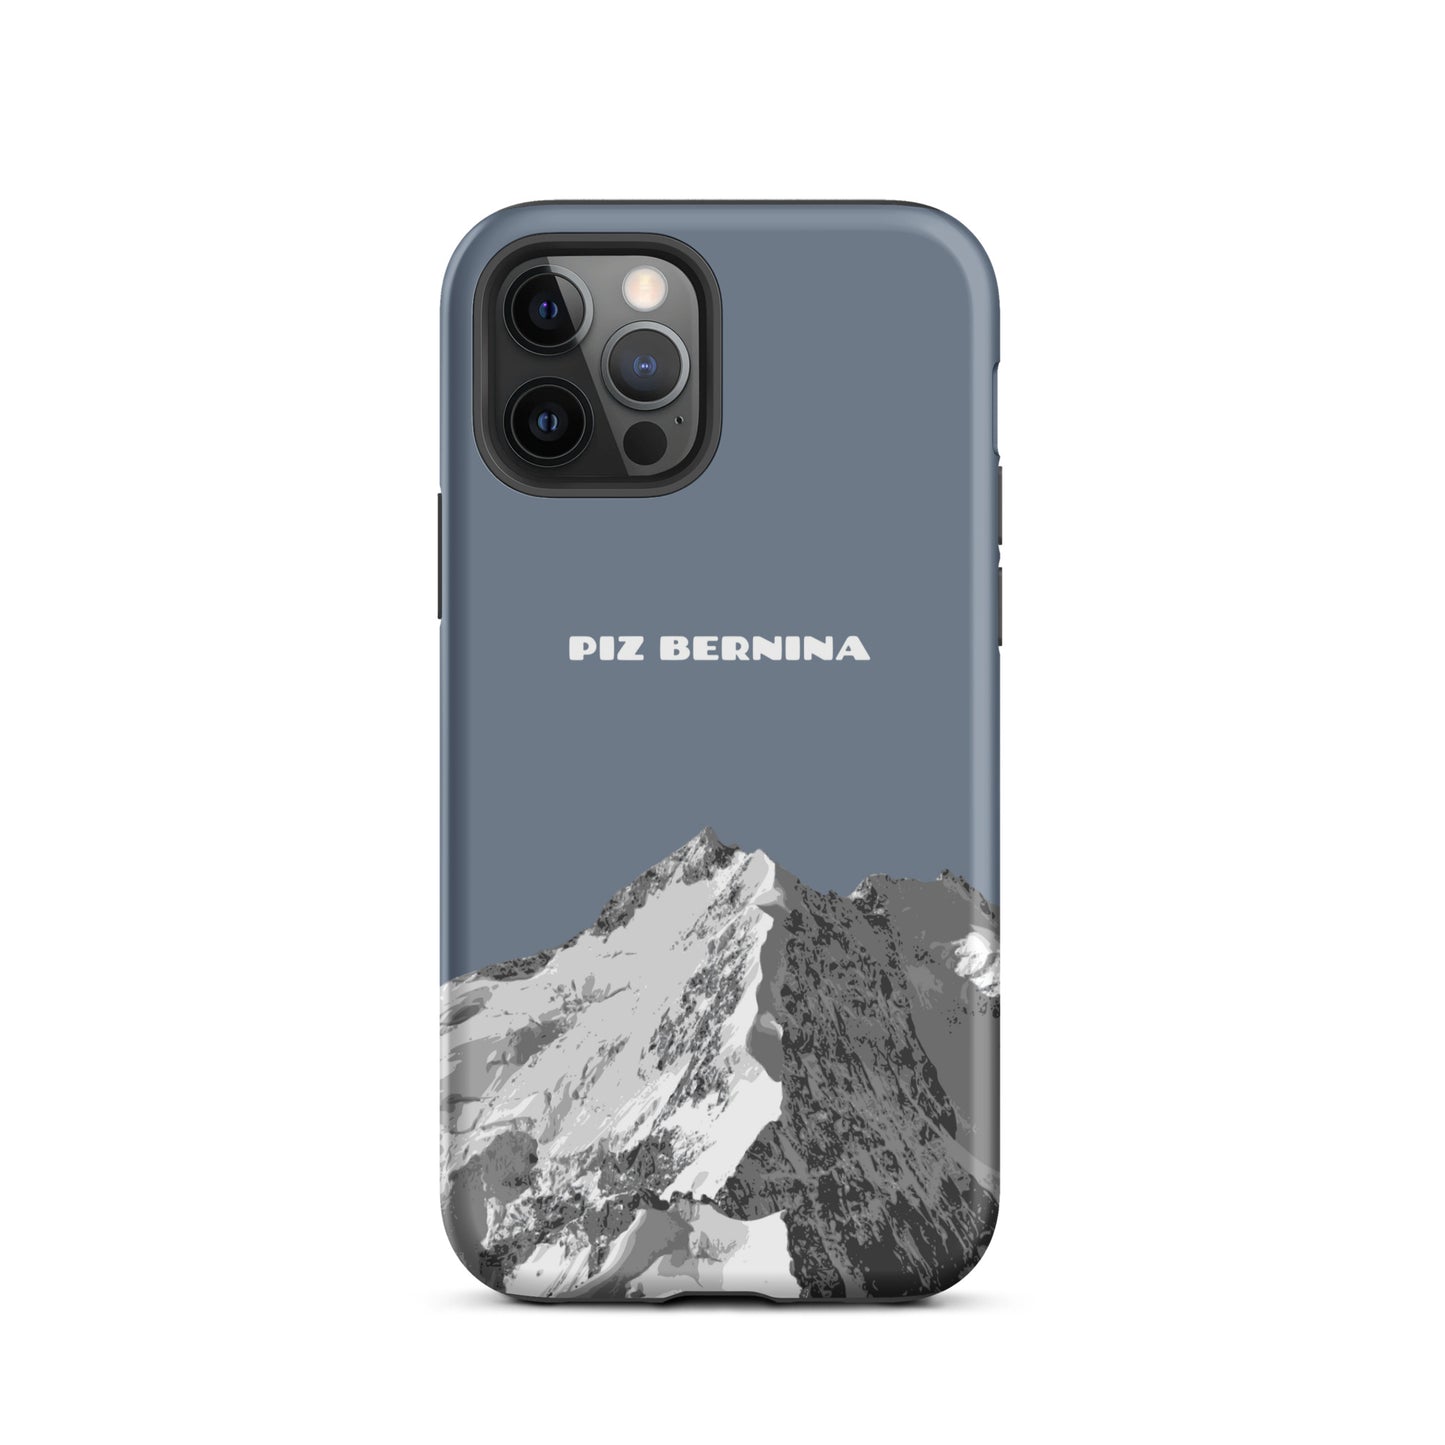 Hülle für das iPhone 12 Pro von Apple in der Farbe Schiefergrau, dass den Piz Bernina in Graubünden zeigt.